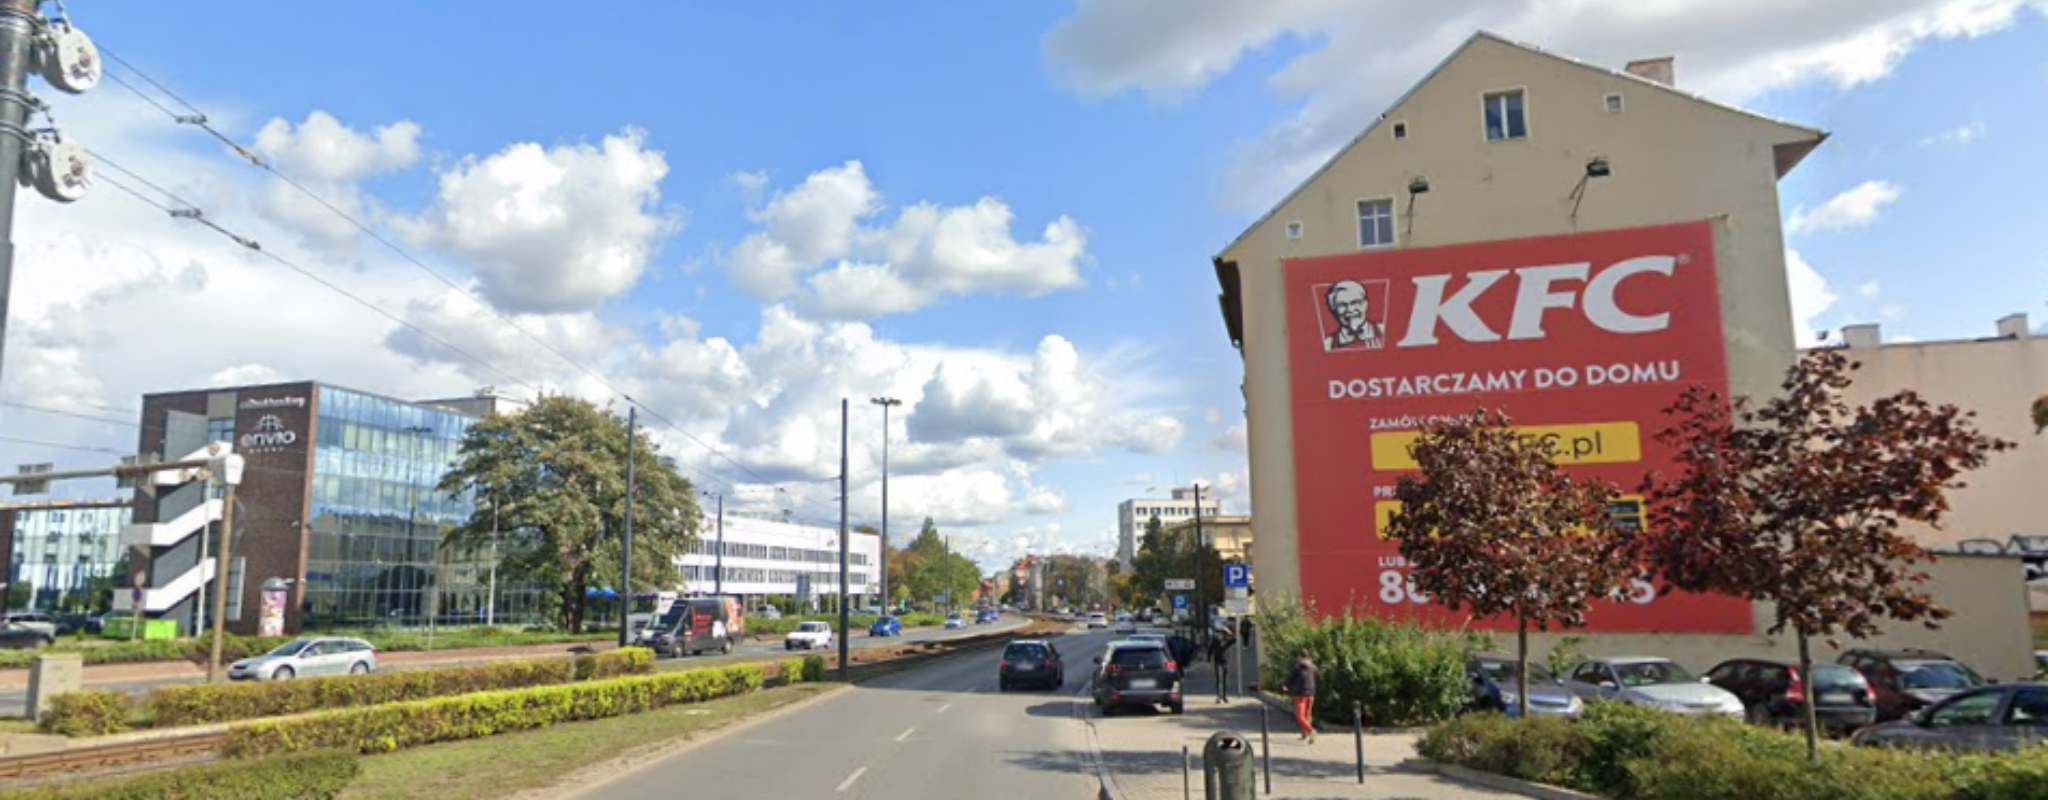 Reklama w Bydgoszczy